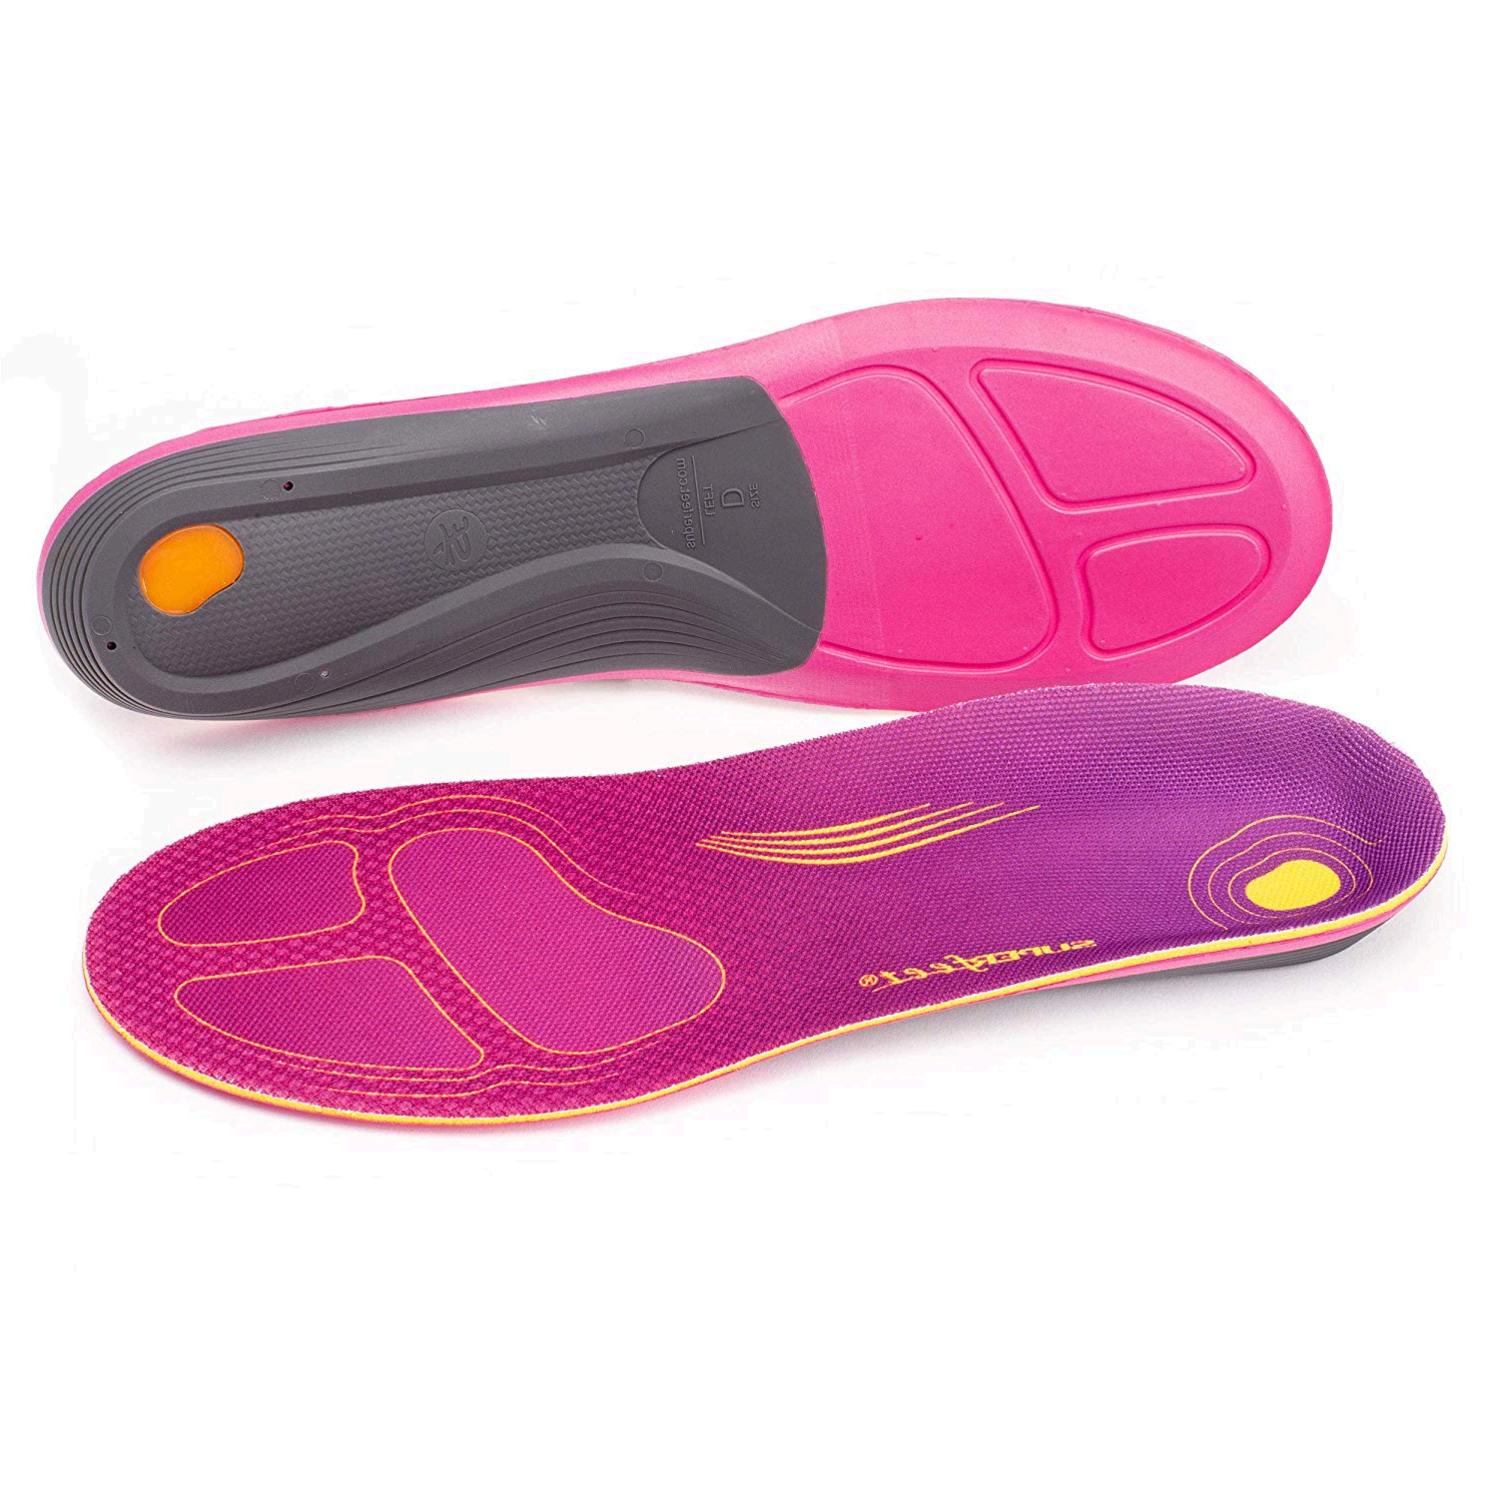 Superfeet Women's RUN Comfort Insoles Carbon Fiber Running Shoe, Plum ...